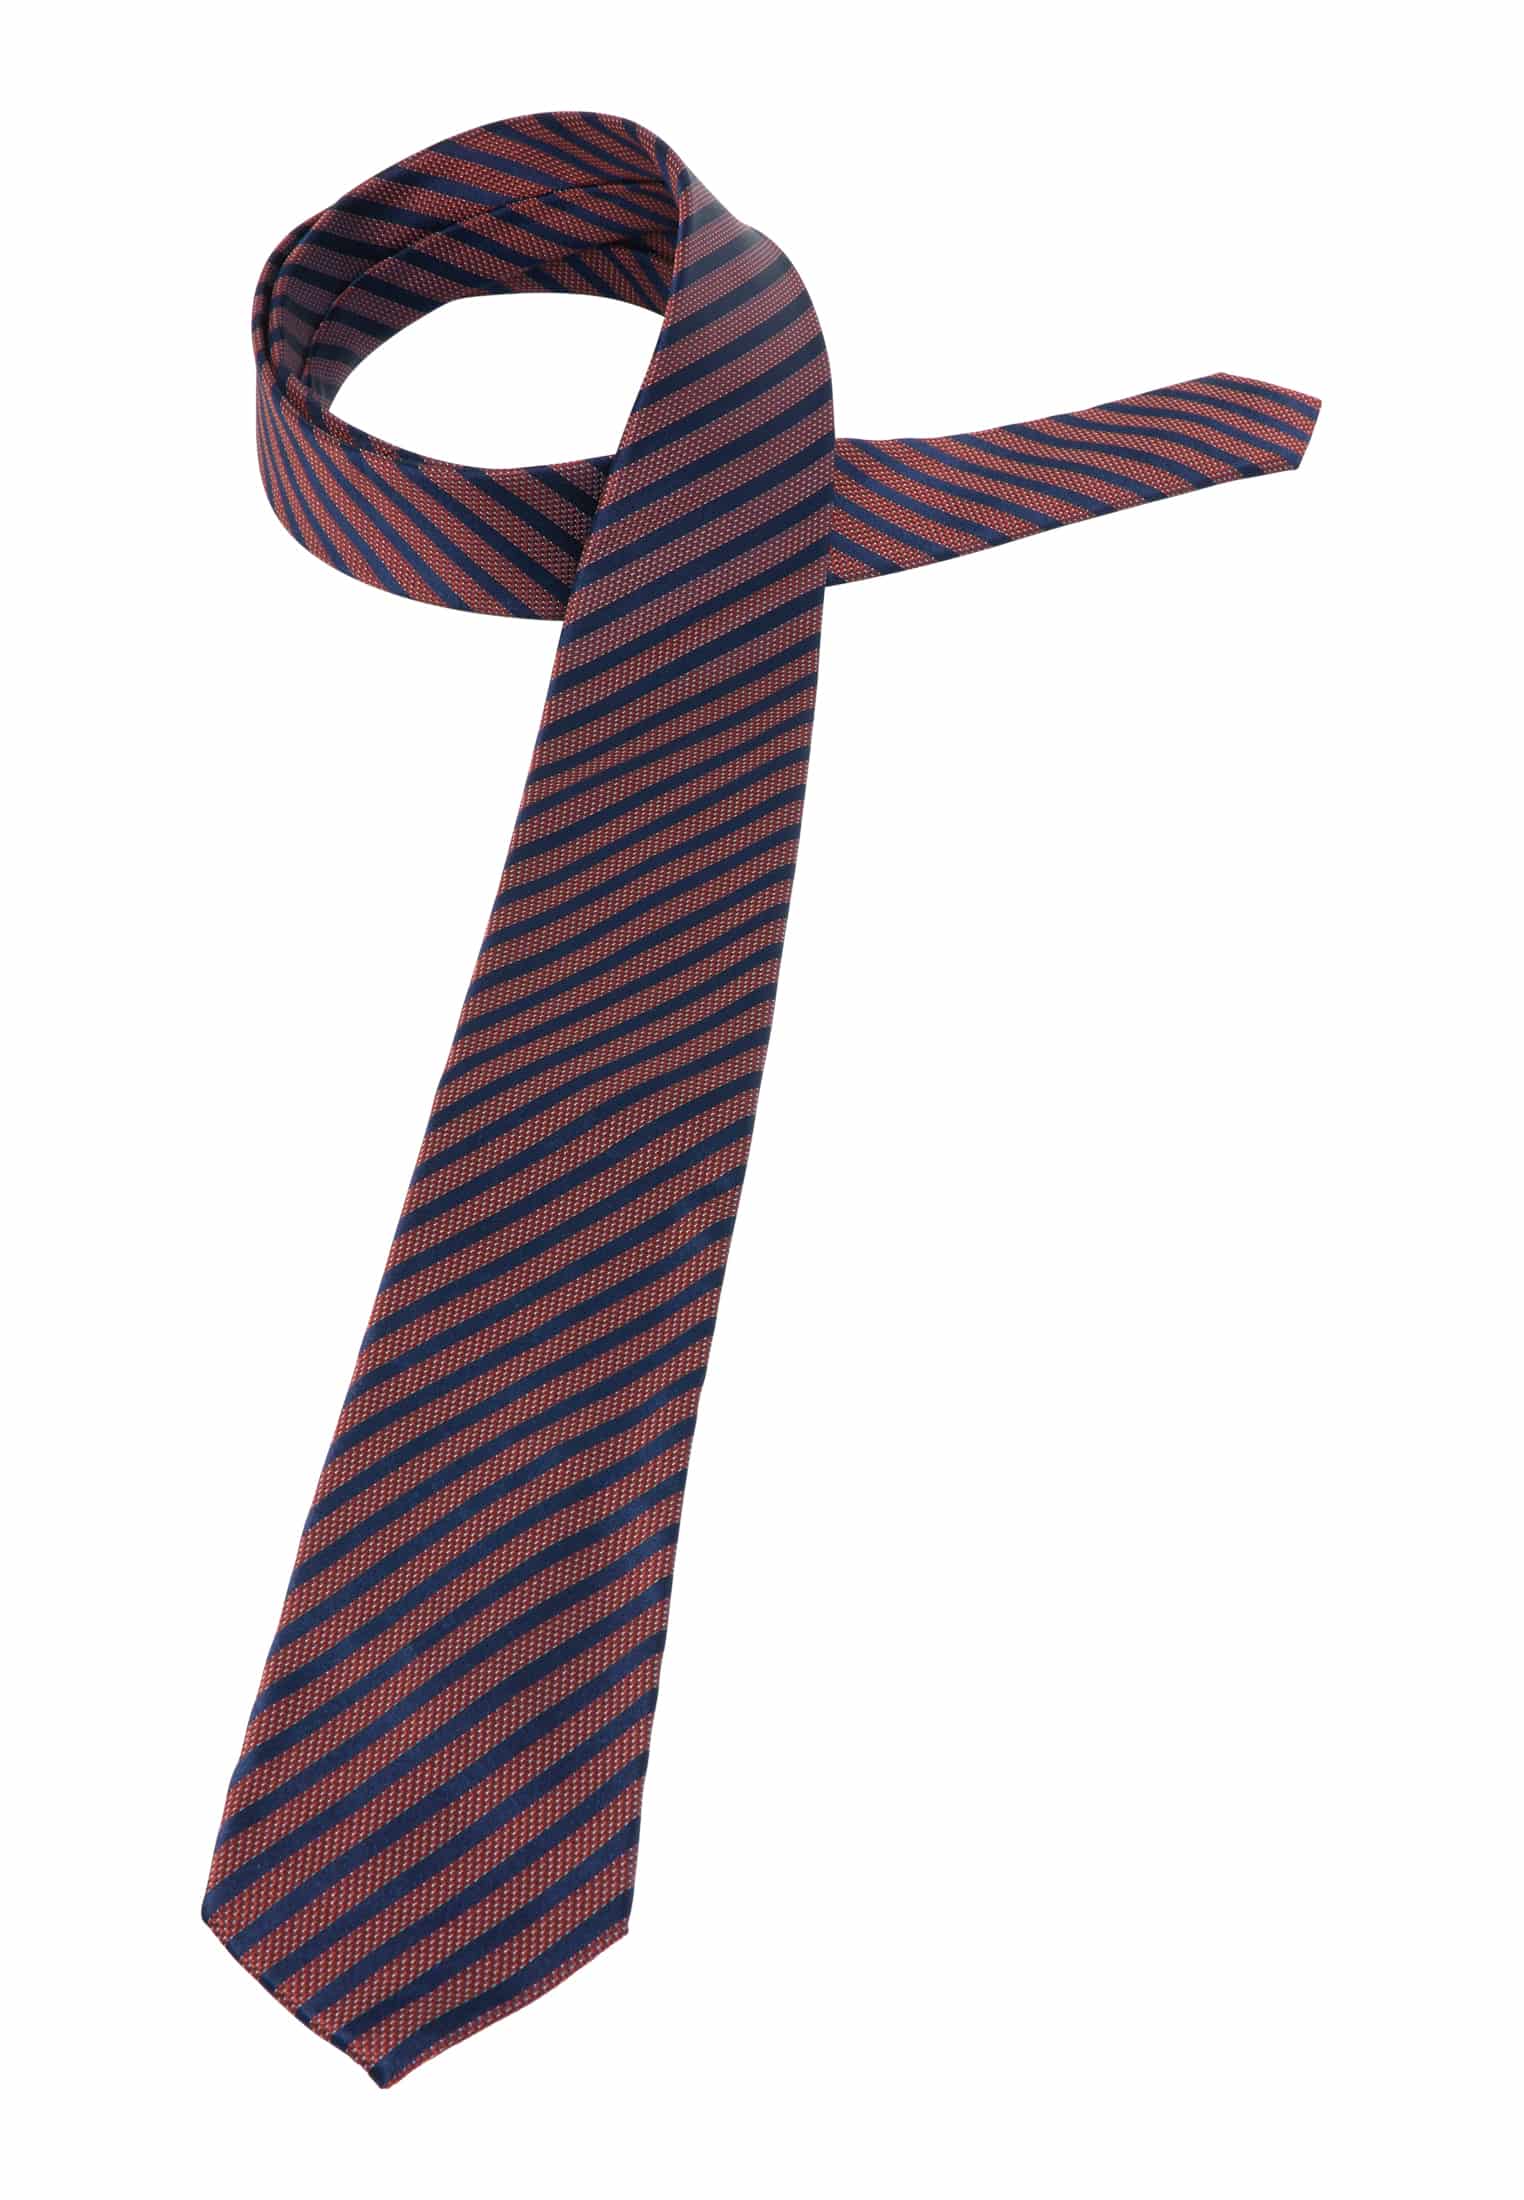 Krawatte in rot gestreift | rot | 142 | 1AC01905-05-01-142